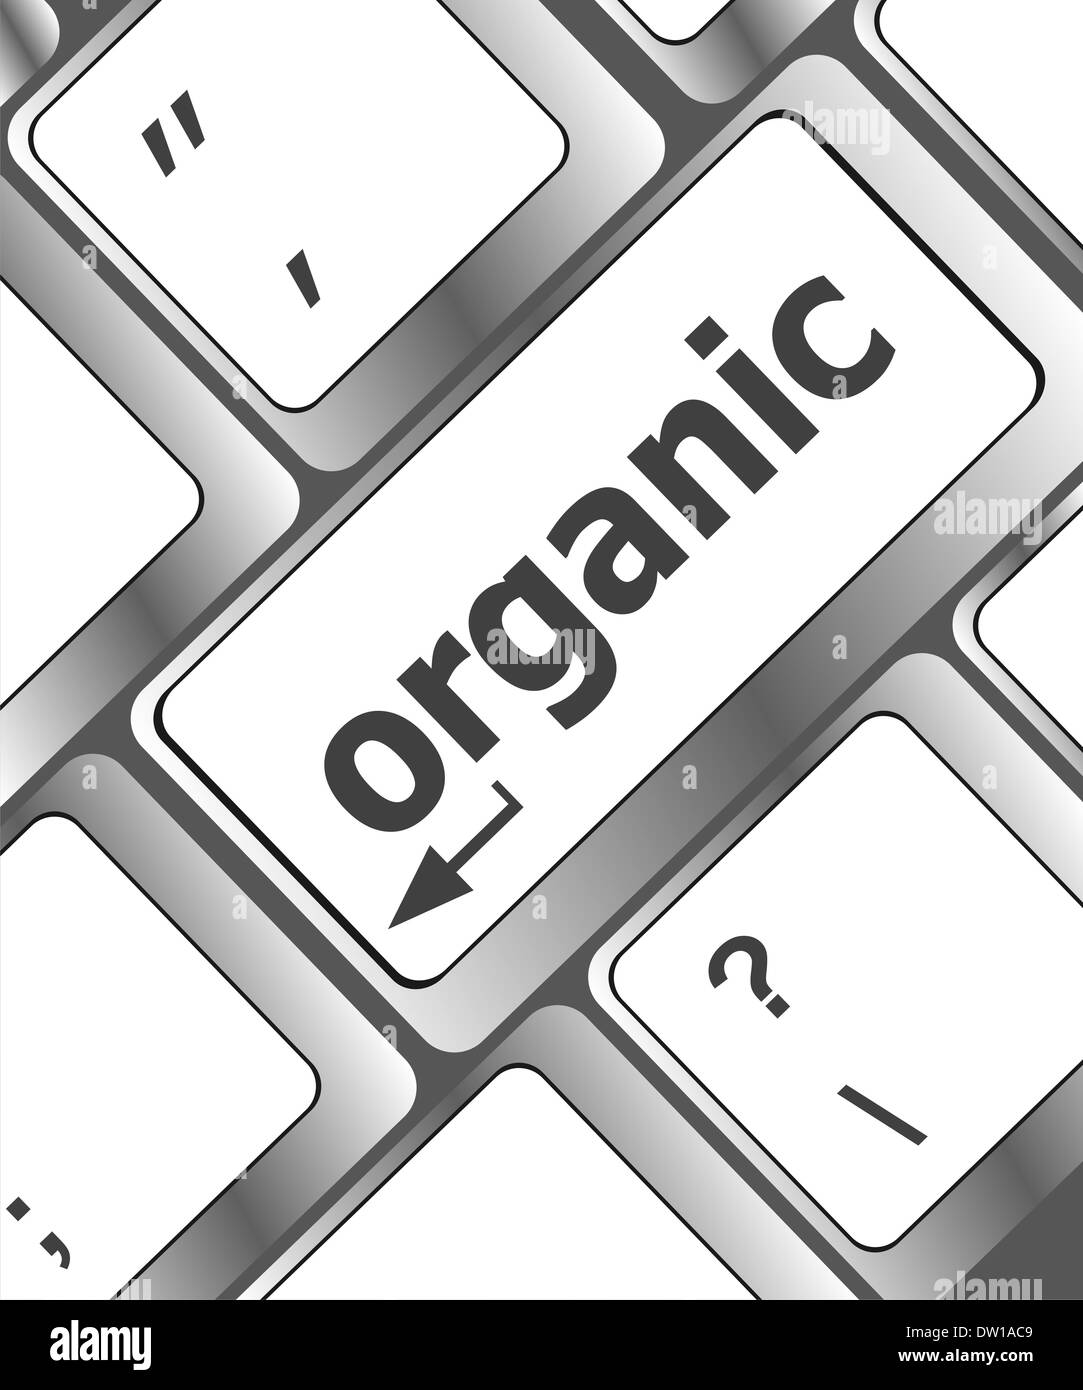 organic word on green keyboard button Stock Photo